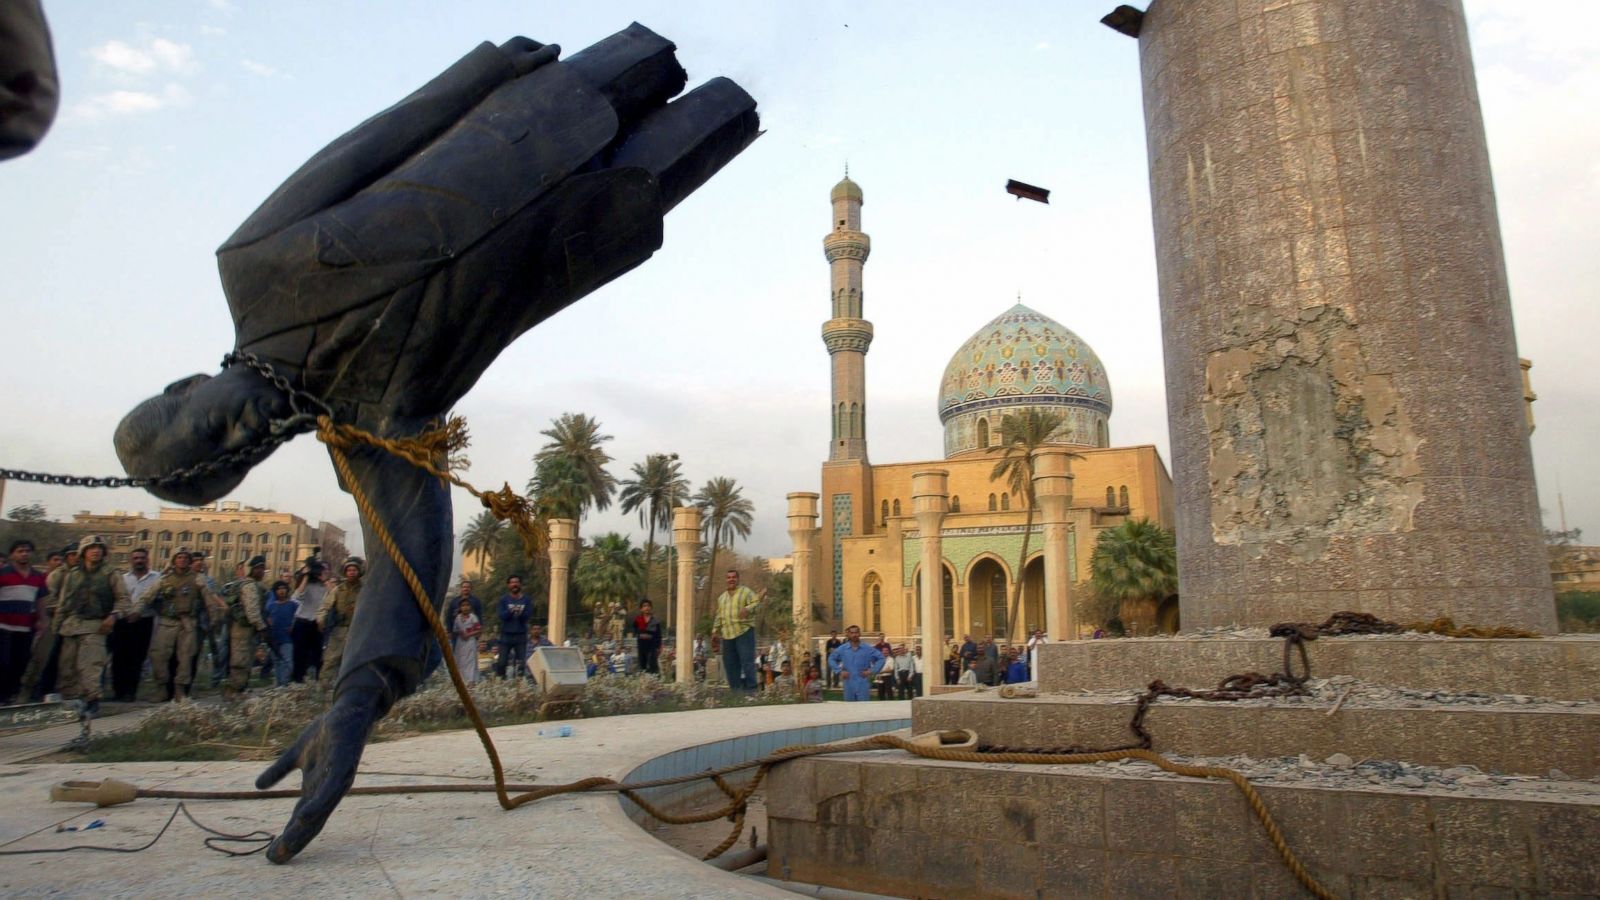 La estructura de bronce de la estatua de Saddam ya desprendida del pedestal y a punto de caer en la plaza de Firdus.